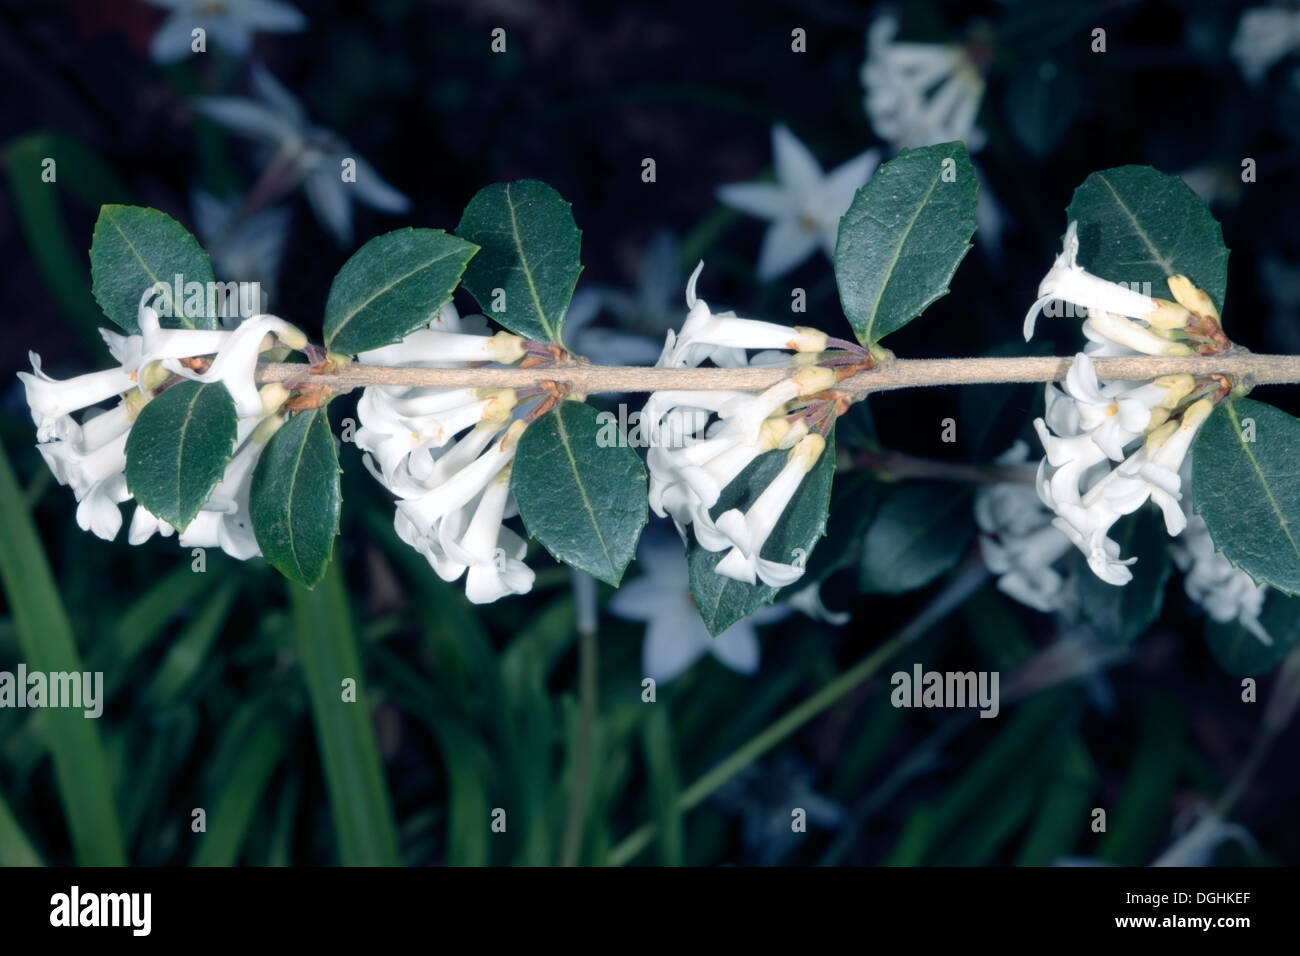 Osmanthus Flowers- Chinese native- Osmanthus delavayi - Family Oleaceae Stock Photo